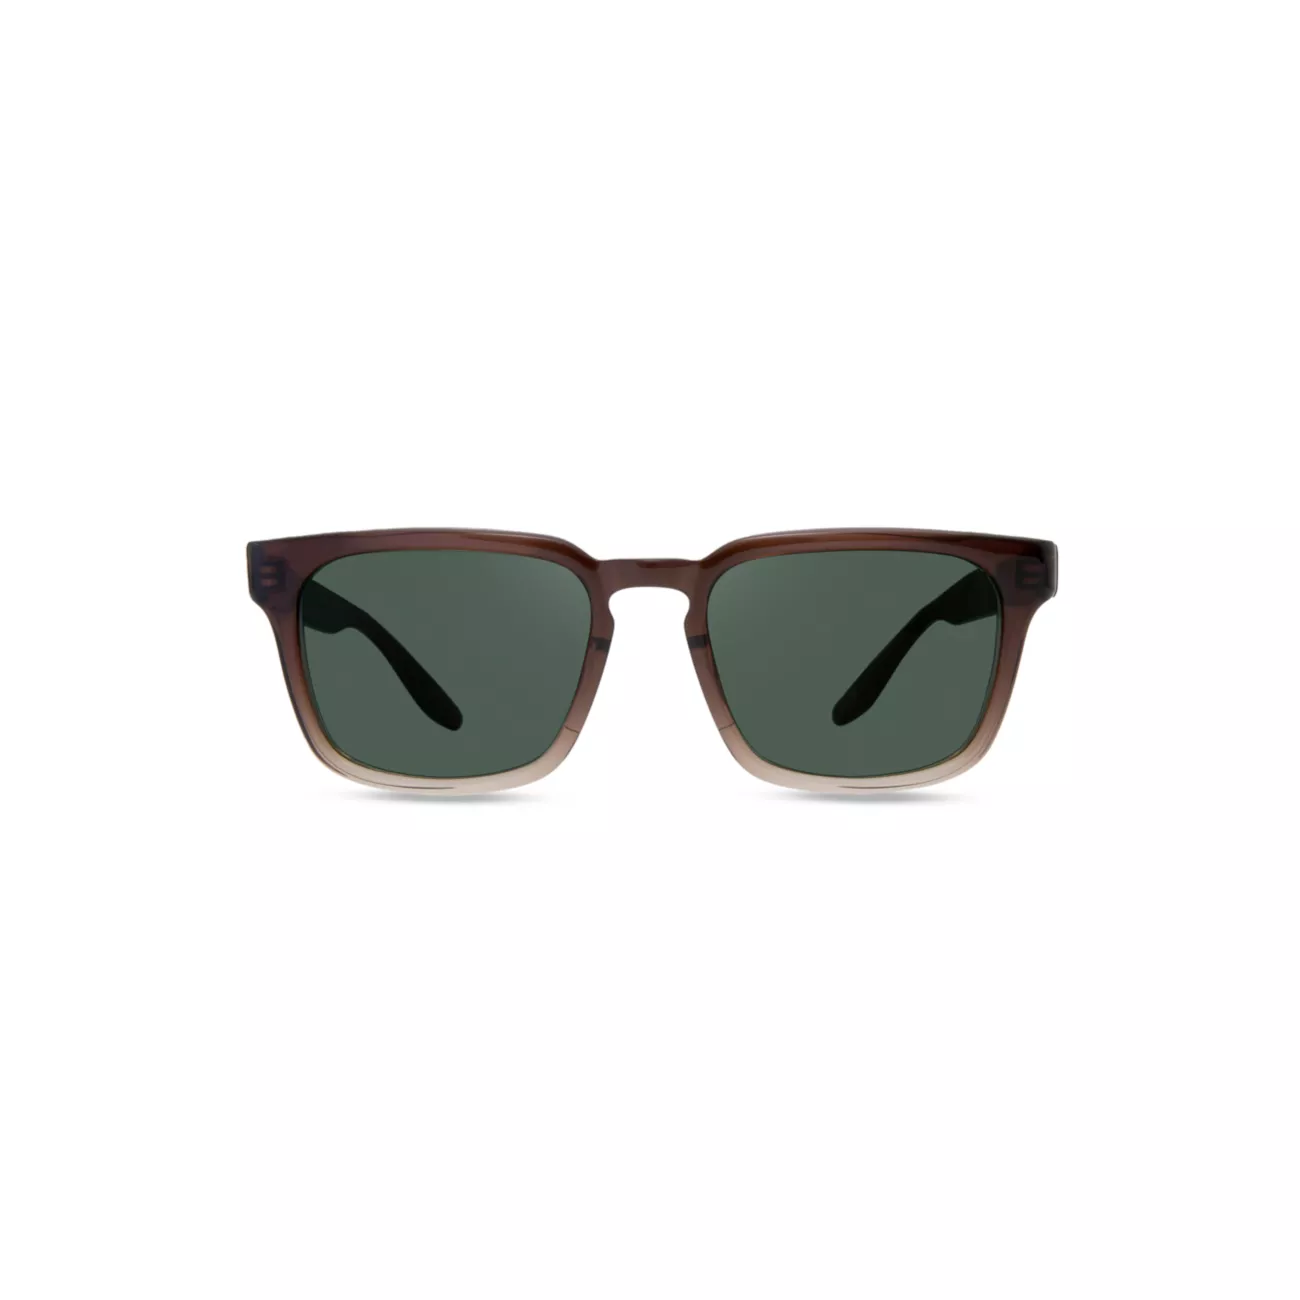 Прямоугольные солнцезащитные очки Hamilton 53 мм Barton Perreira